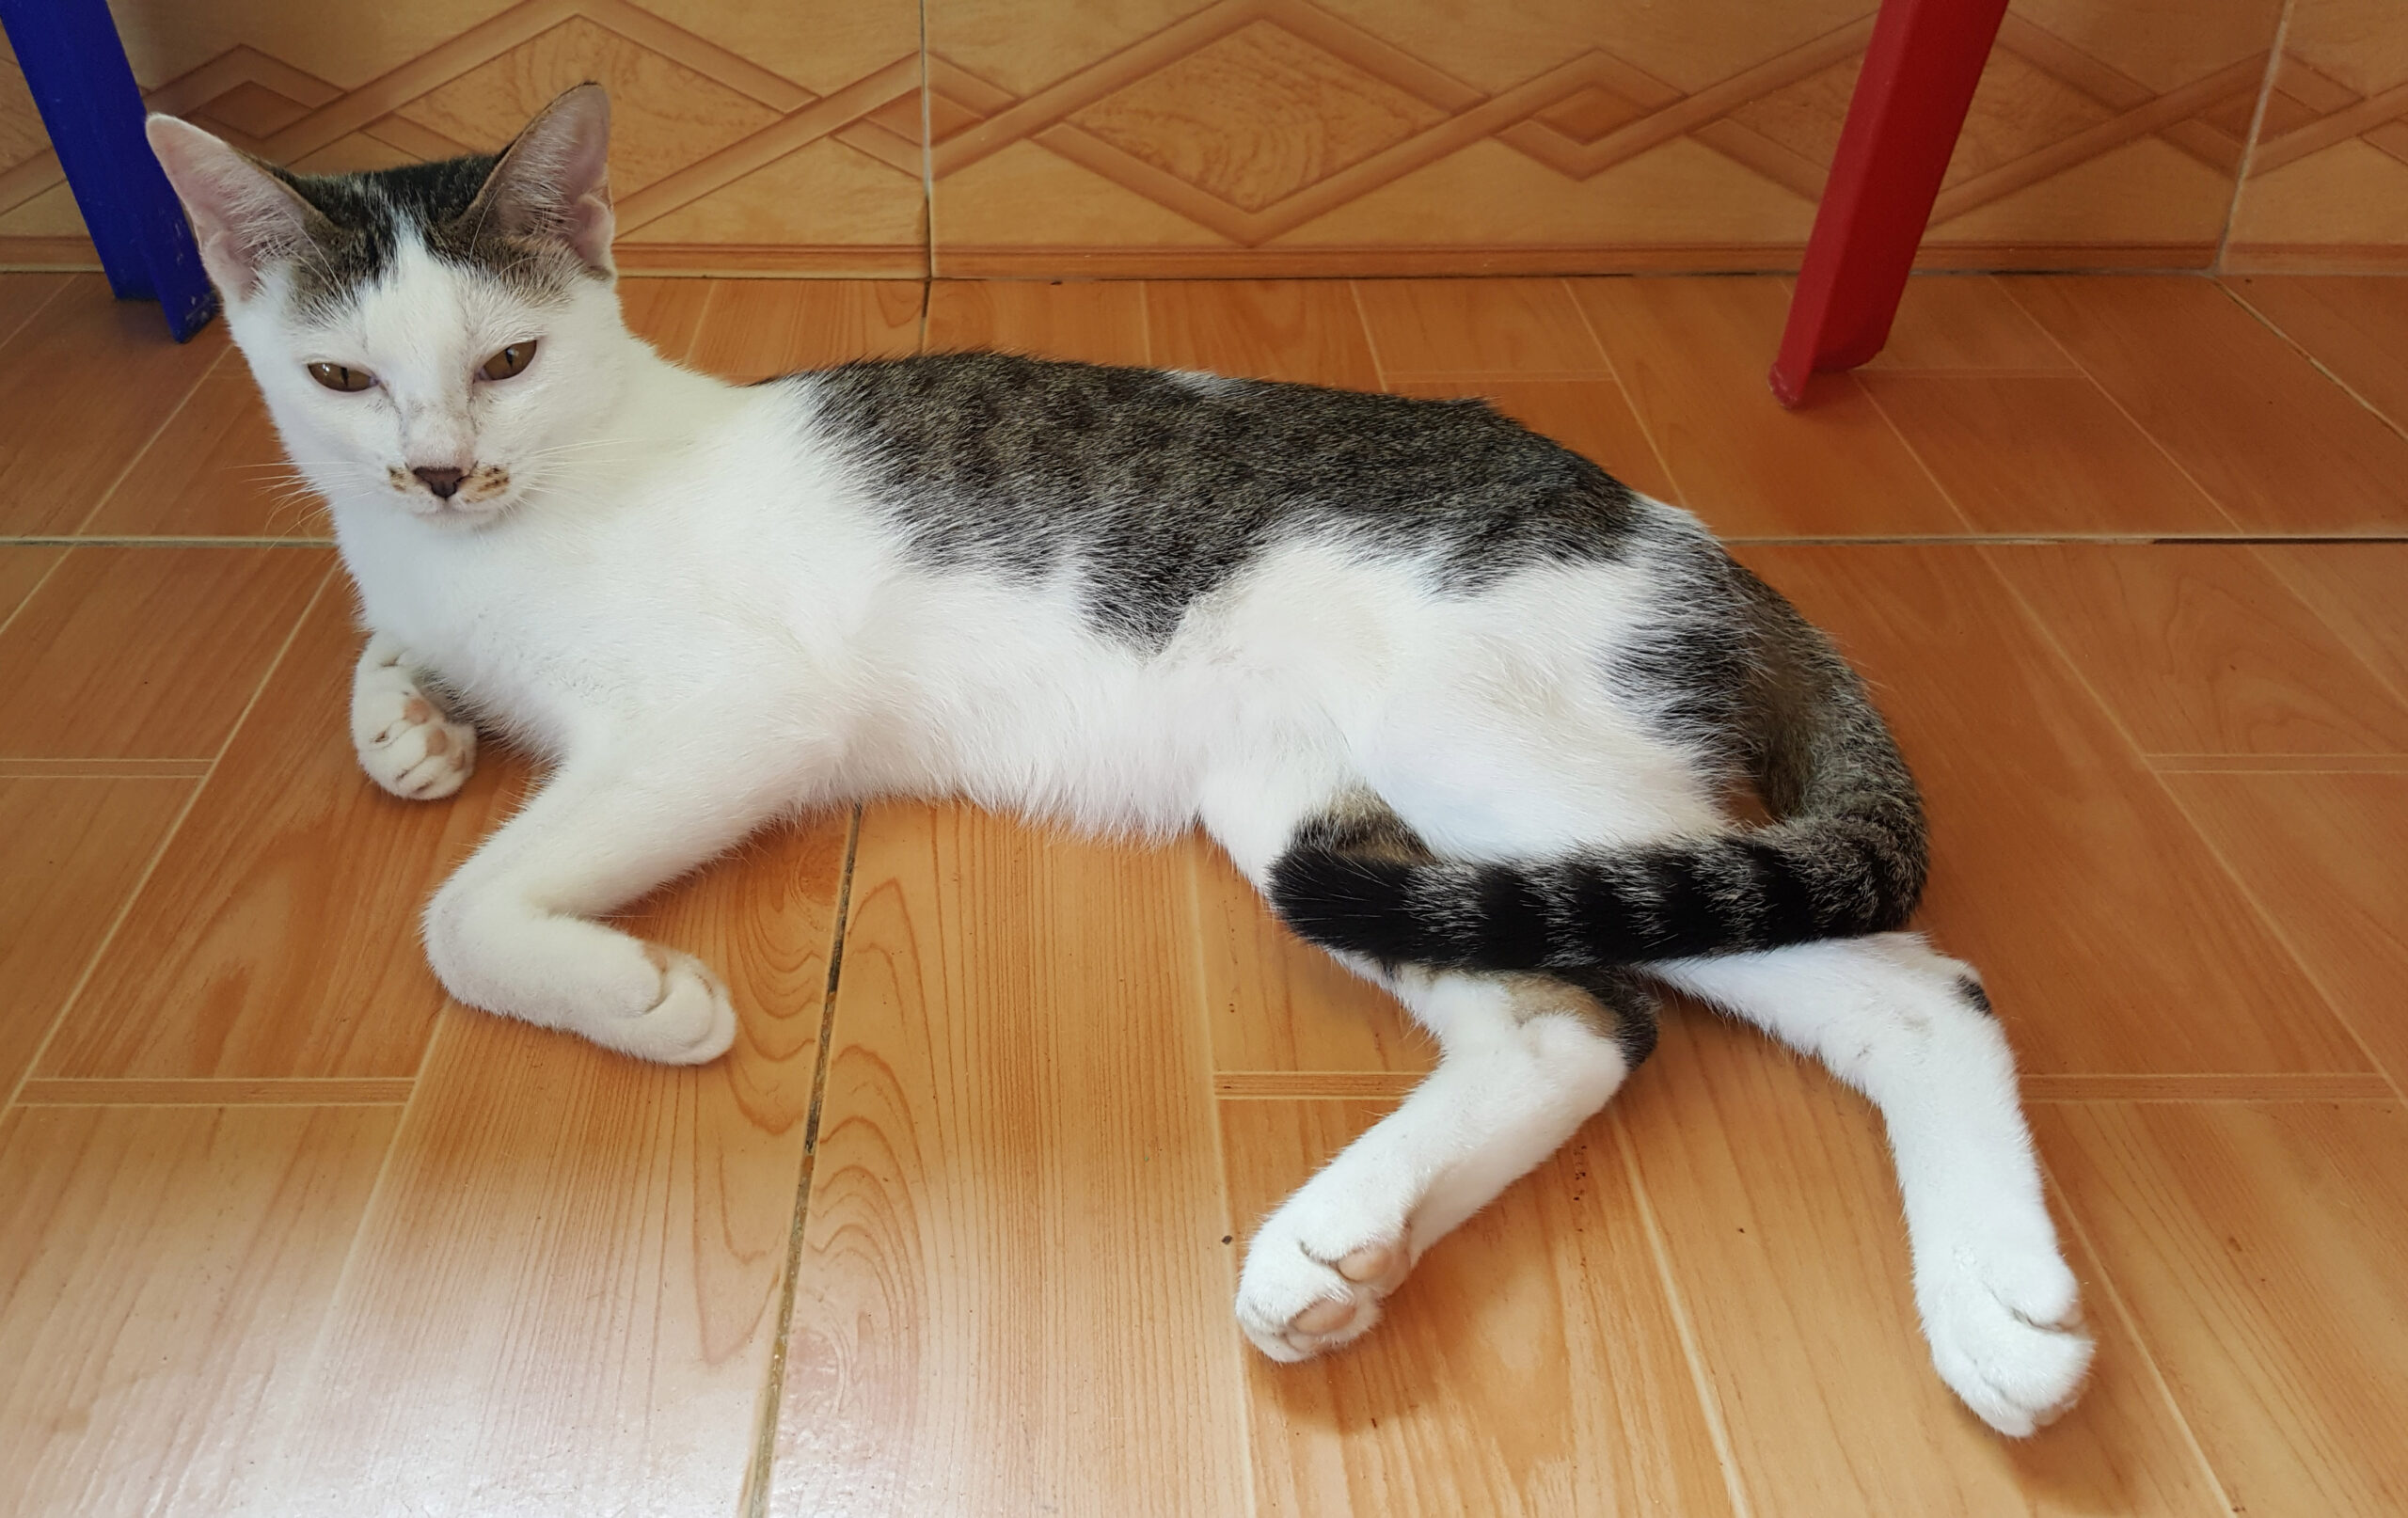 Adopt Indie | Cat adoption Vietnam Animal Aid and Rescue